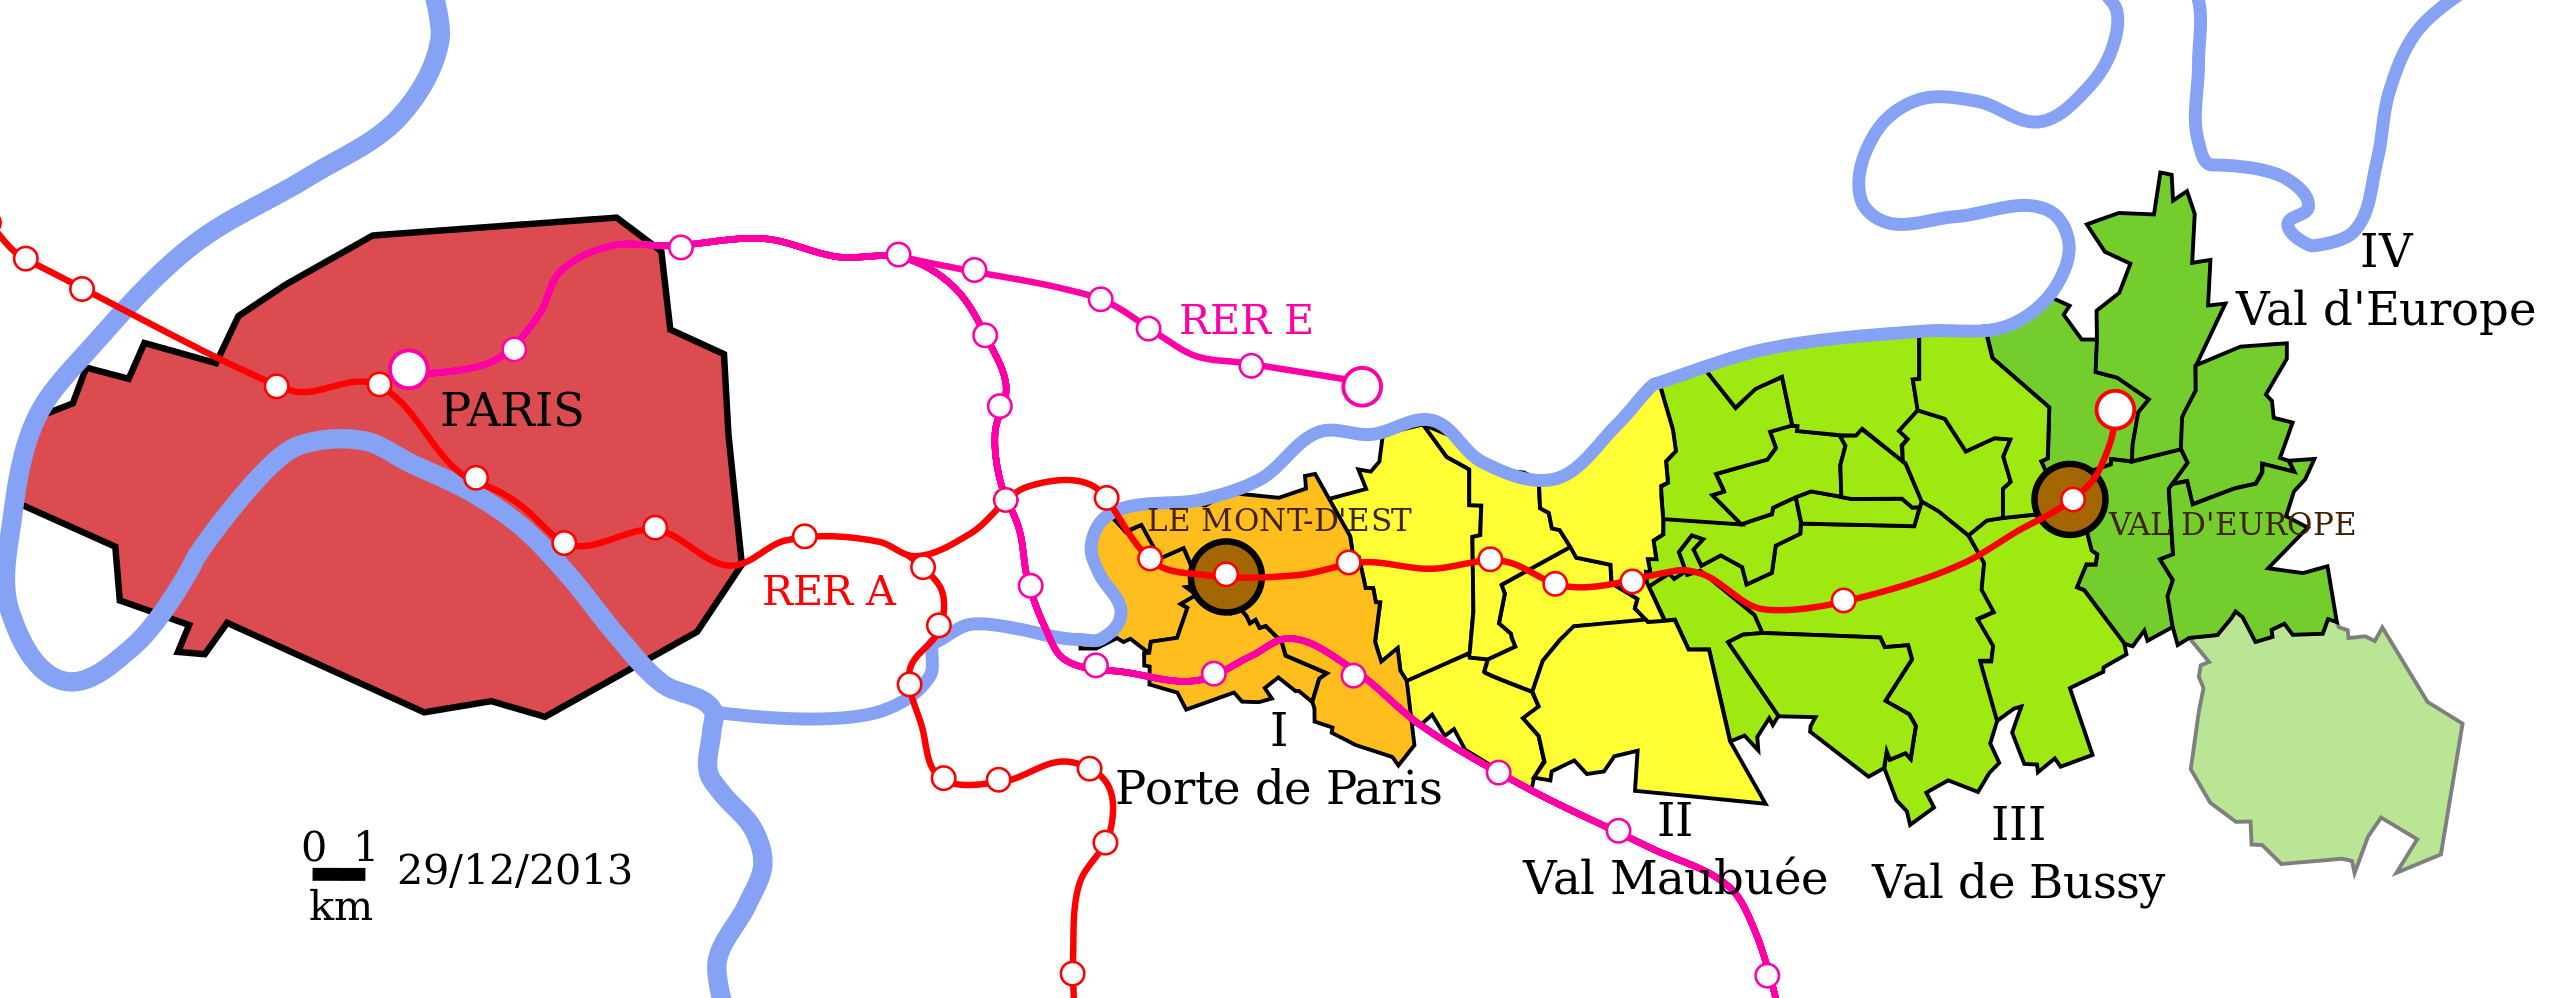 Ficheiro:Marne-la-Vallee-RER.jpg – Wikipédia, a enciclopédia livre